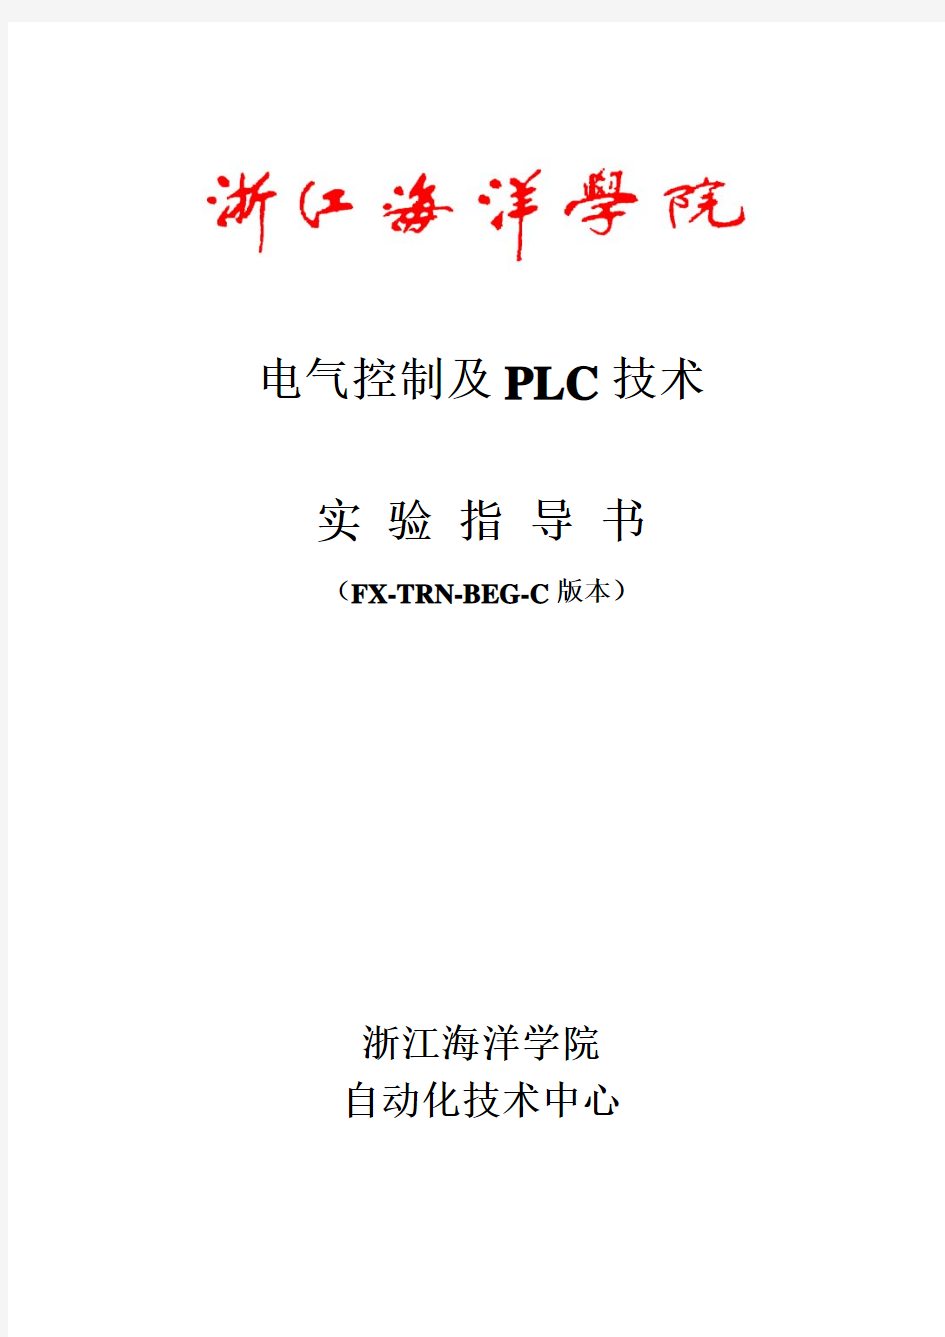 16《电气控制及PLC技术》实验指导书(FX-TRN-BEG-C版本)